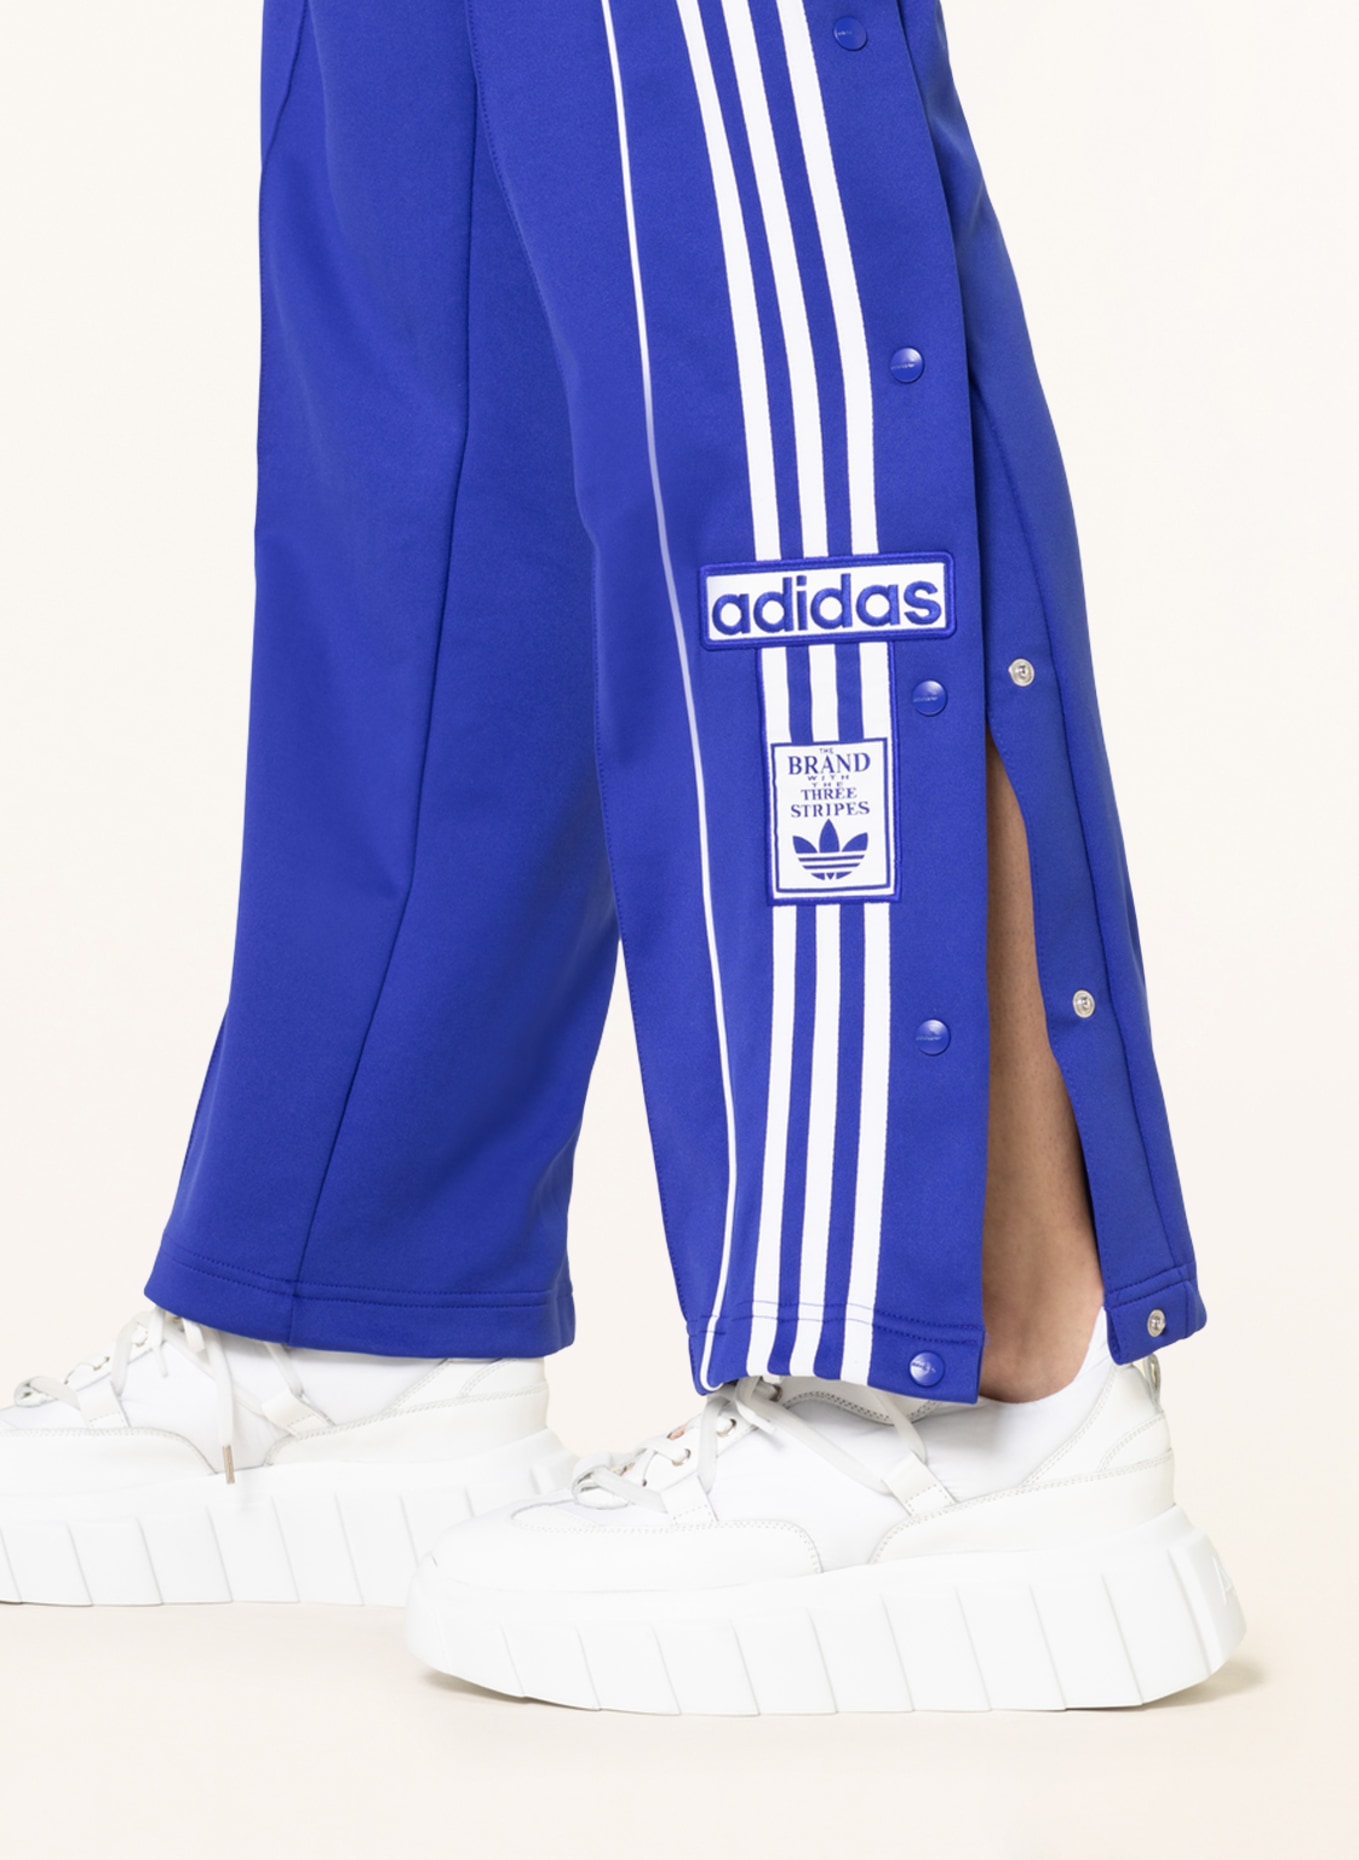 adidas Originals 'Always Original' adibreak trousers in blue